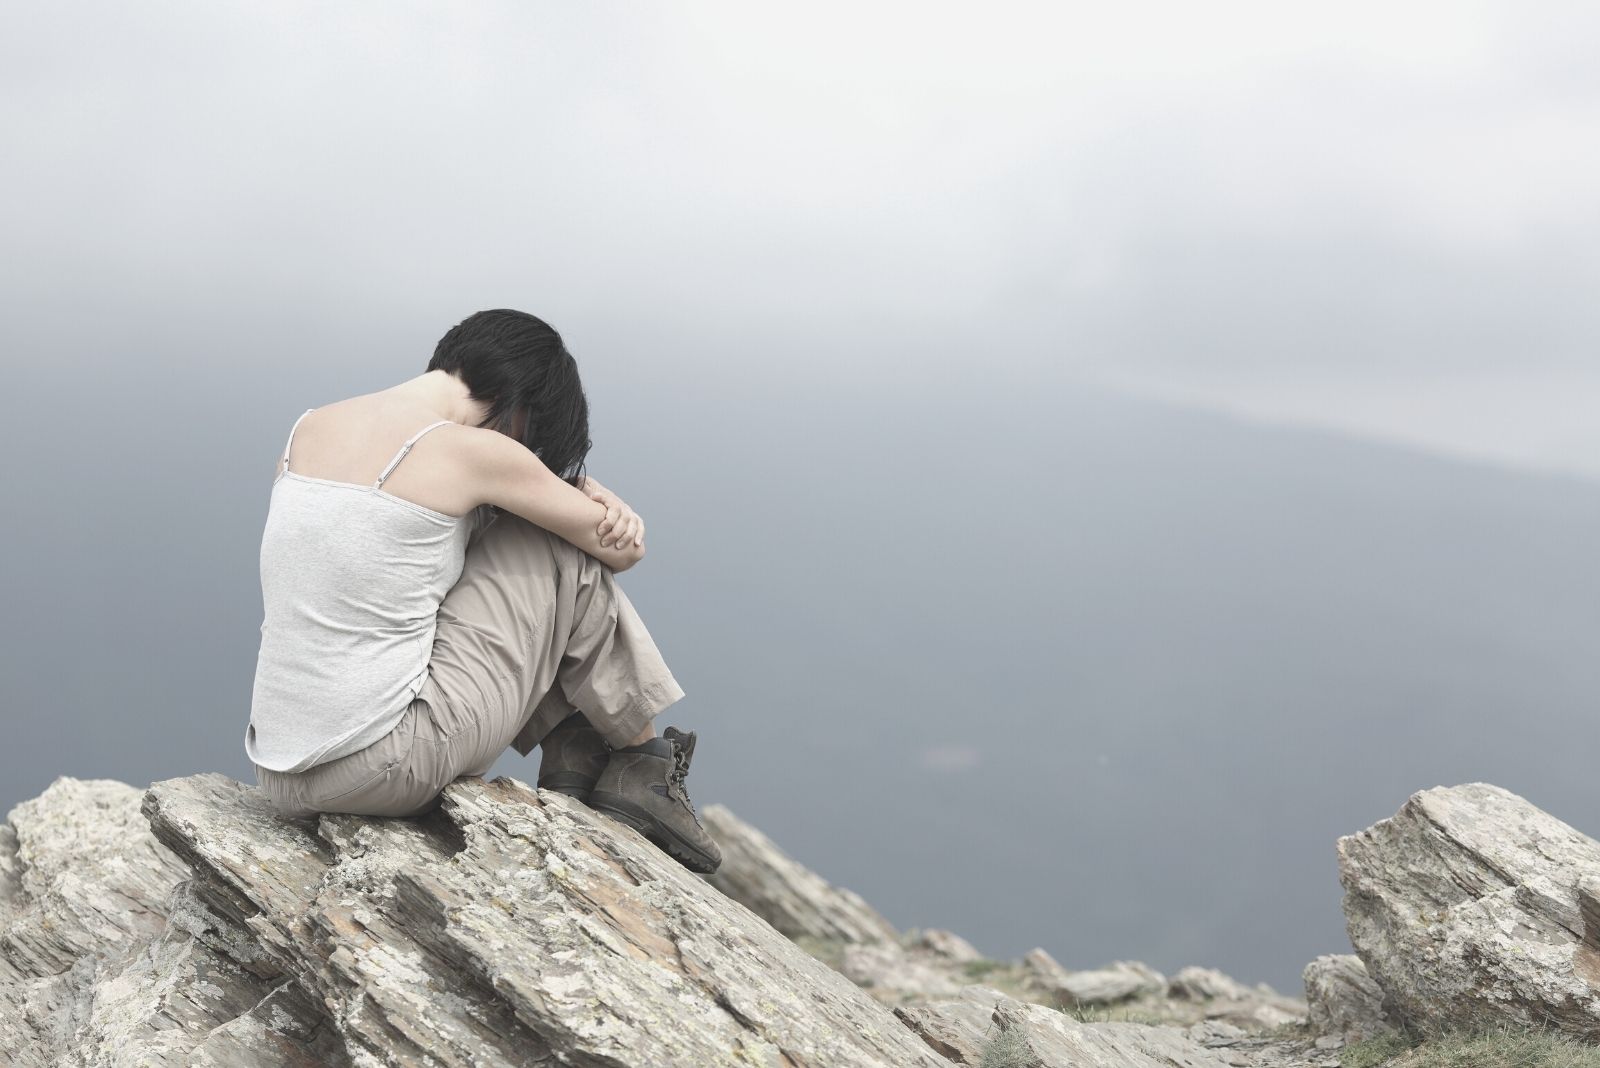 donna depressa e triste seduta in cima alla montagna con la faccia rivolta verso il basso abbracciando le ginocchia